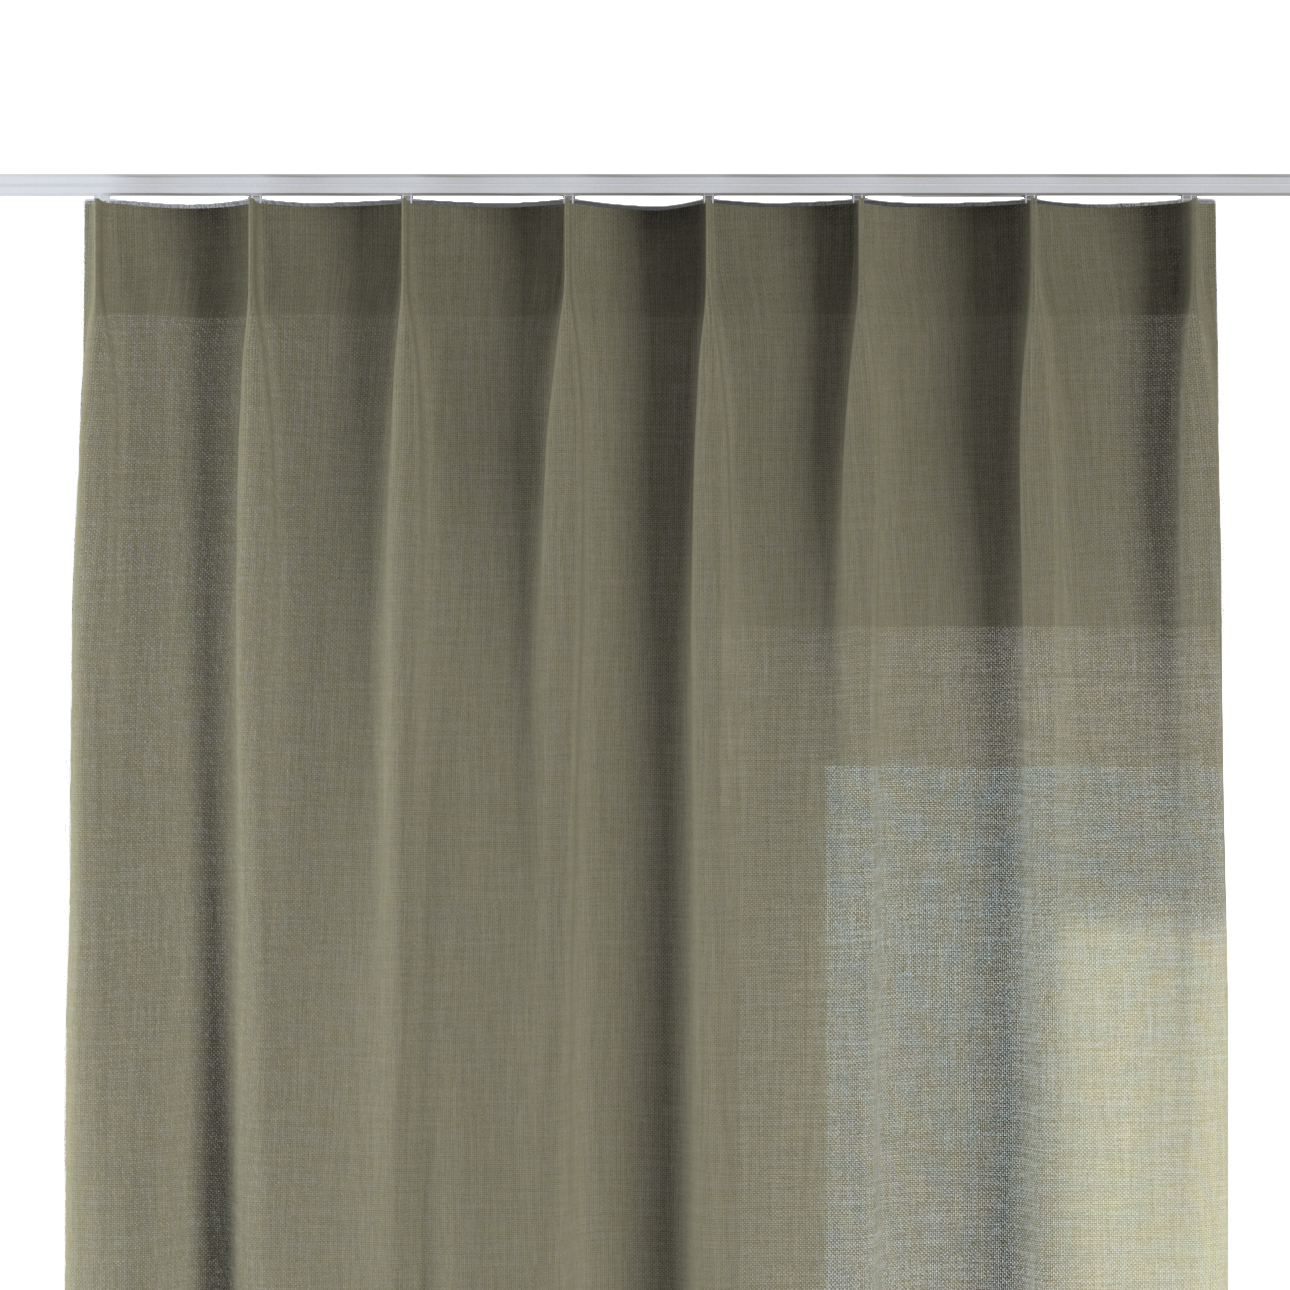 Vorhang mit flämischen 1-er Falten, olivgrün, Sensual Premium (144-43) günstig online kaufen